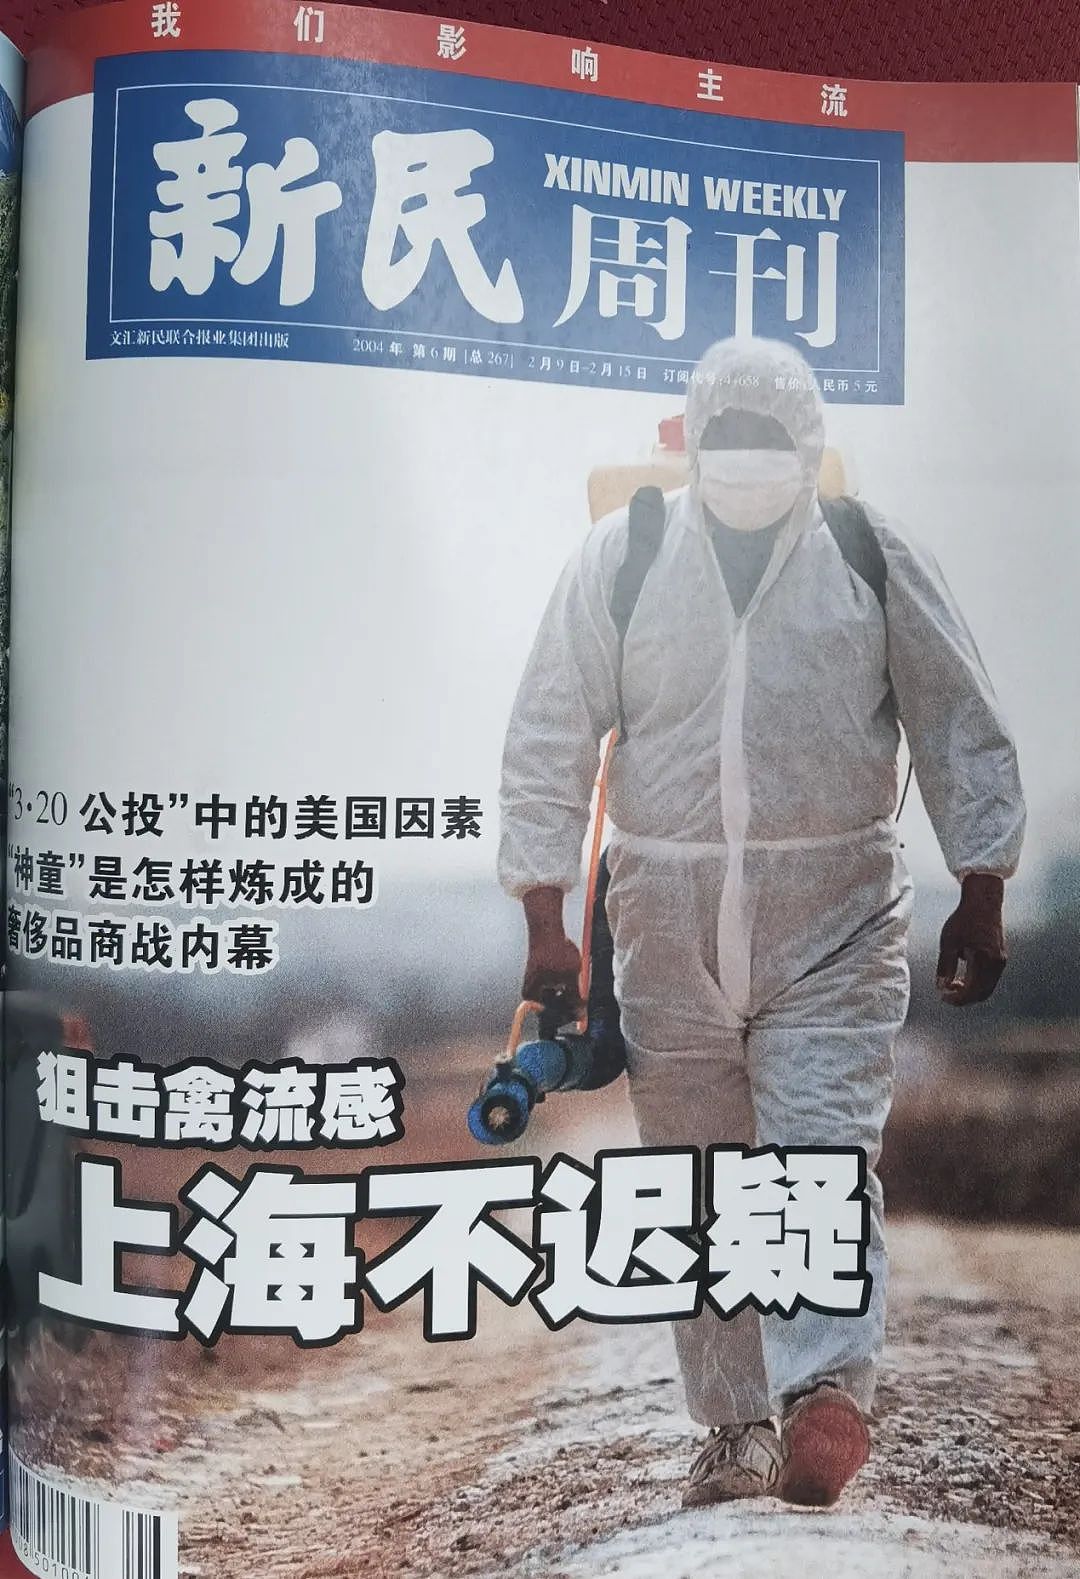 2004年《新民周刊》报道上海禽流感封面 